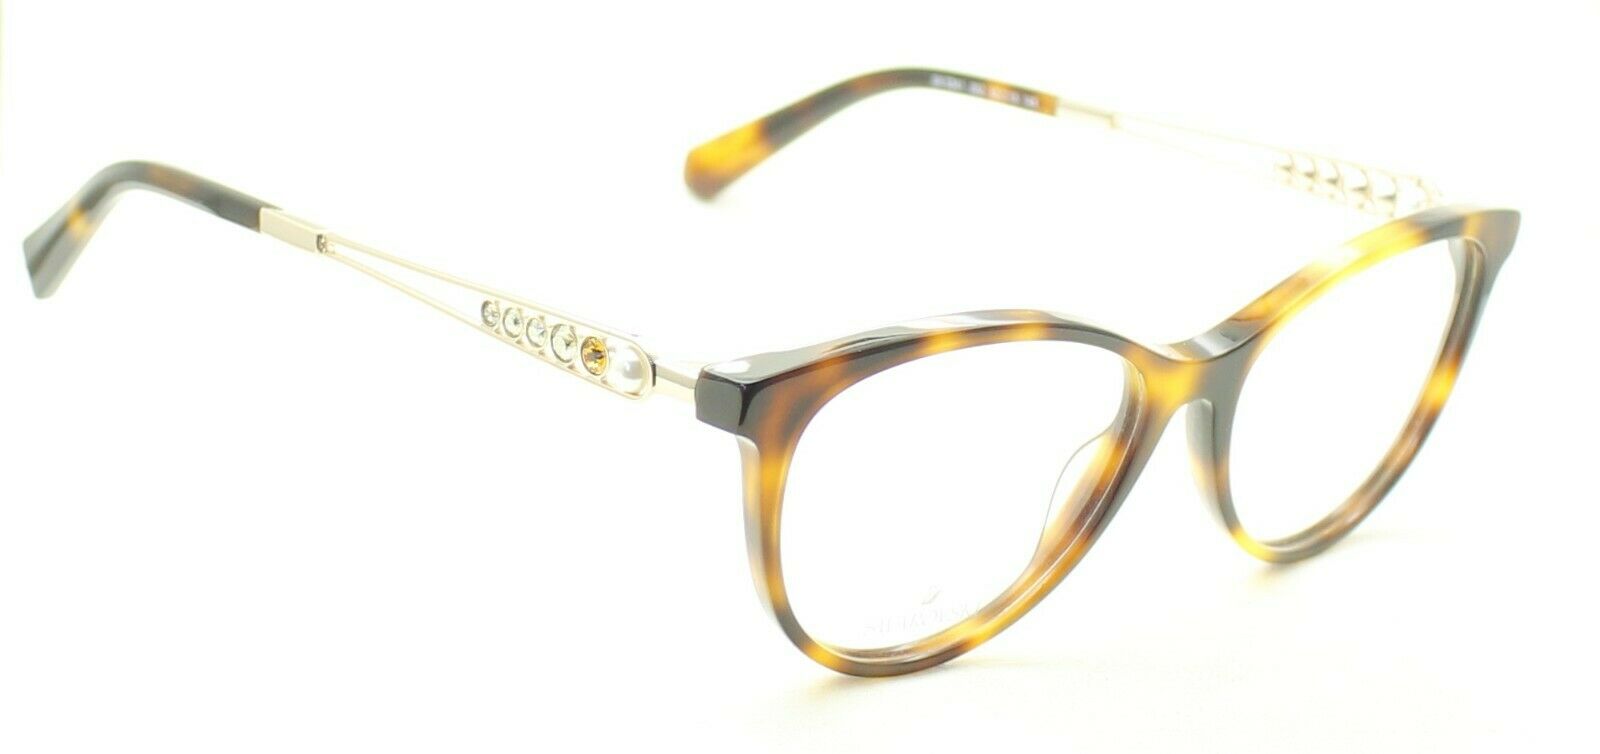 SWAROVSKI SK 5341 052 52mm Eyewear FRAMES RX Optical Glasses Eyeglasses - New